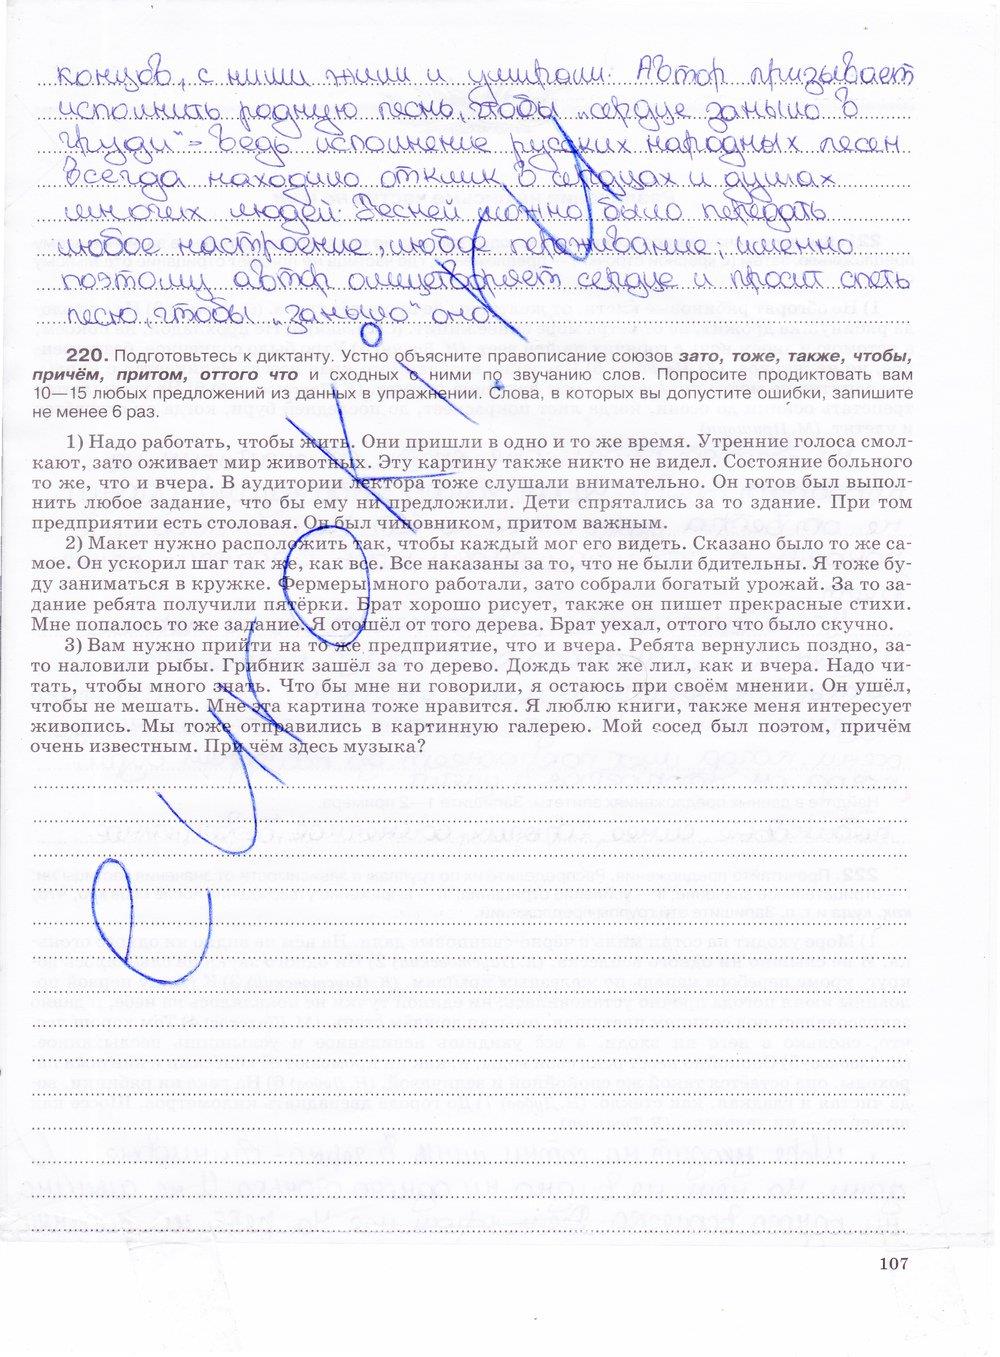 гдз 7 класс рабочая тетрадь страница 107 русский язык Ларионова